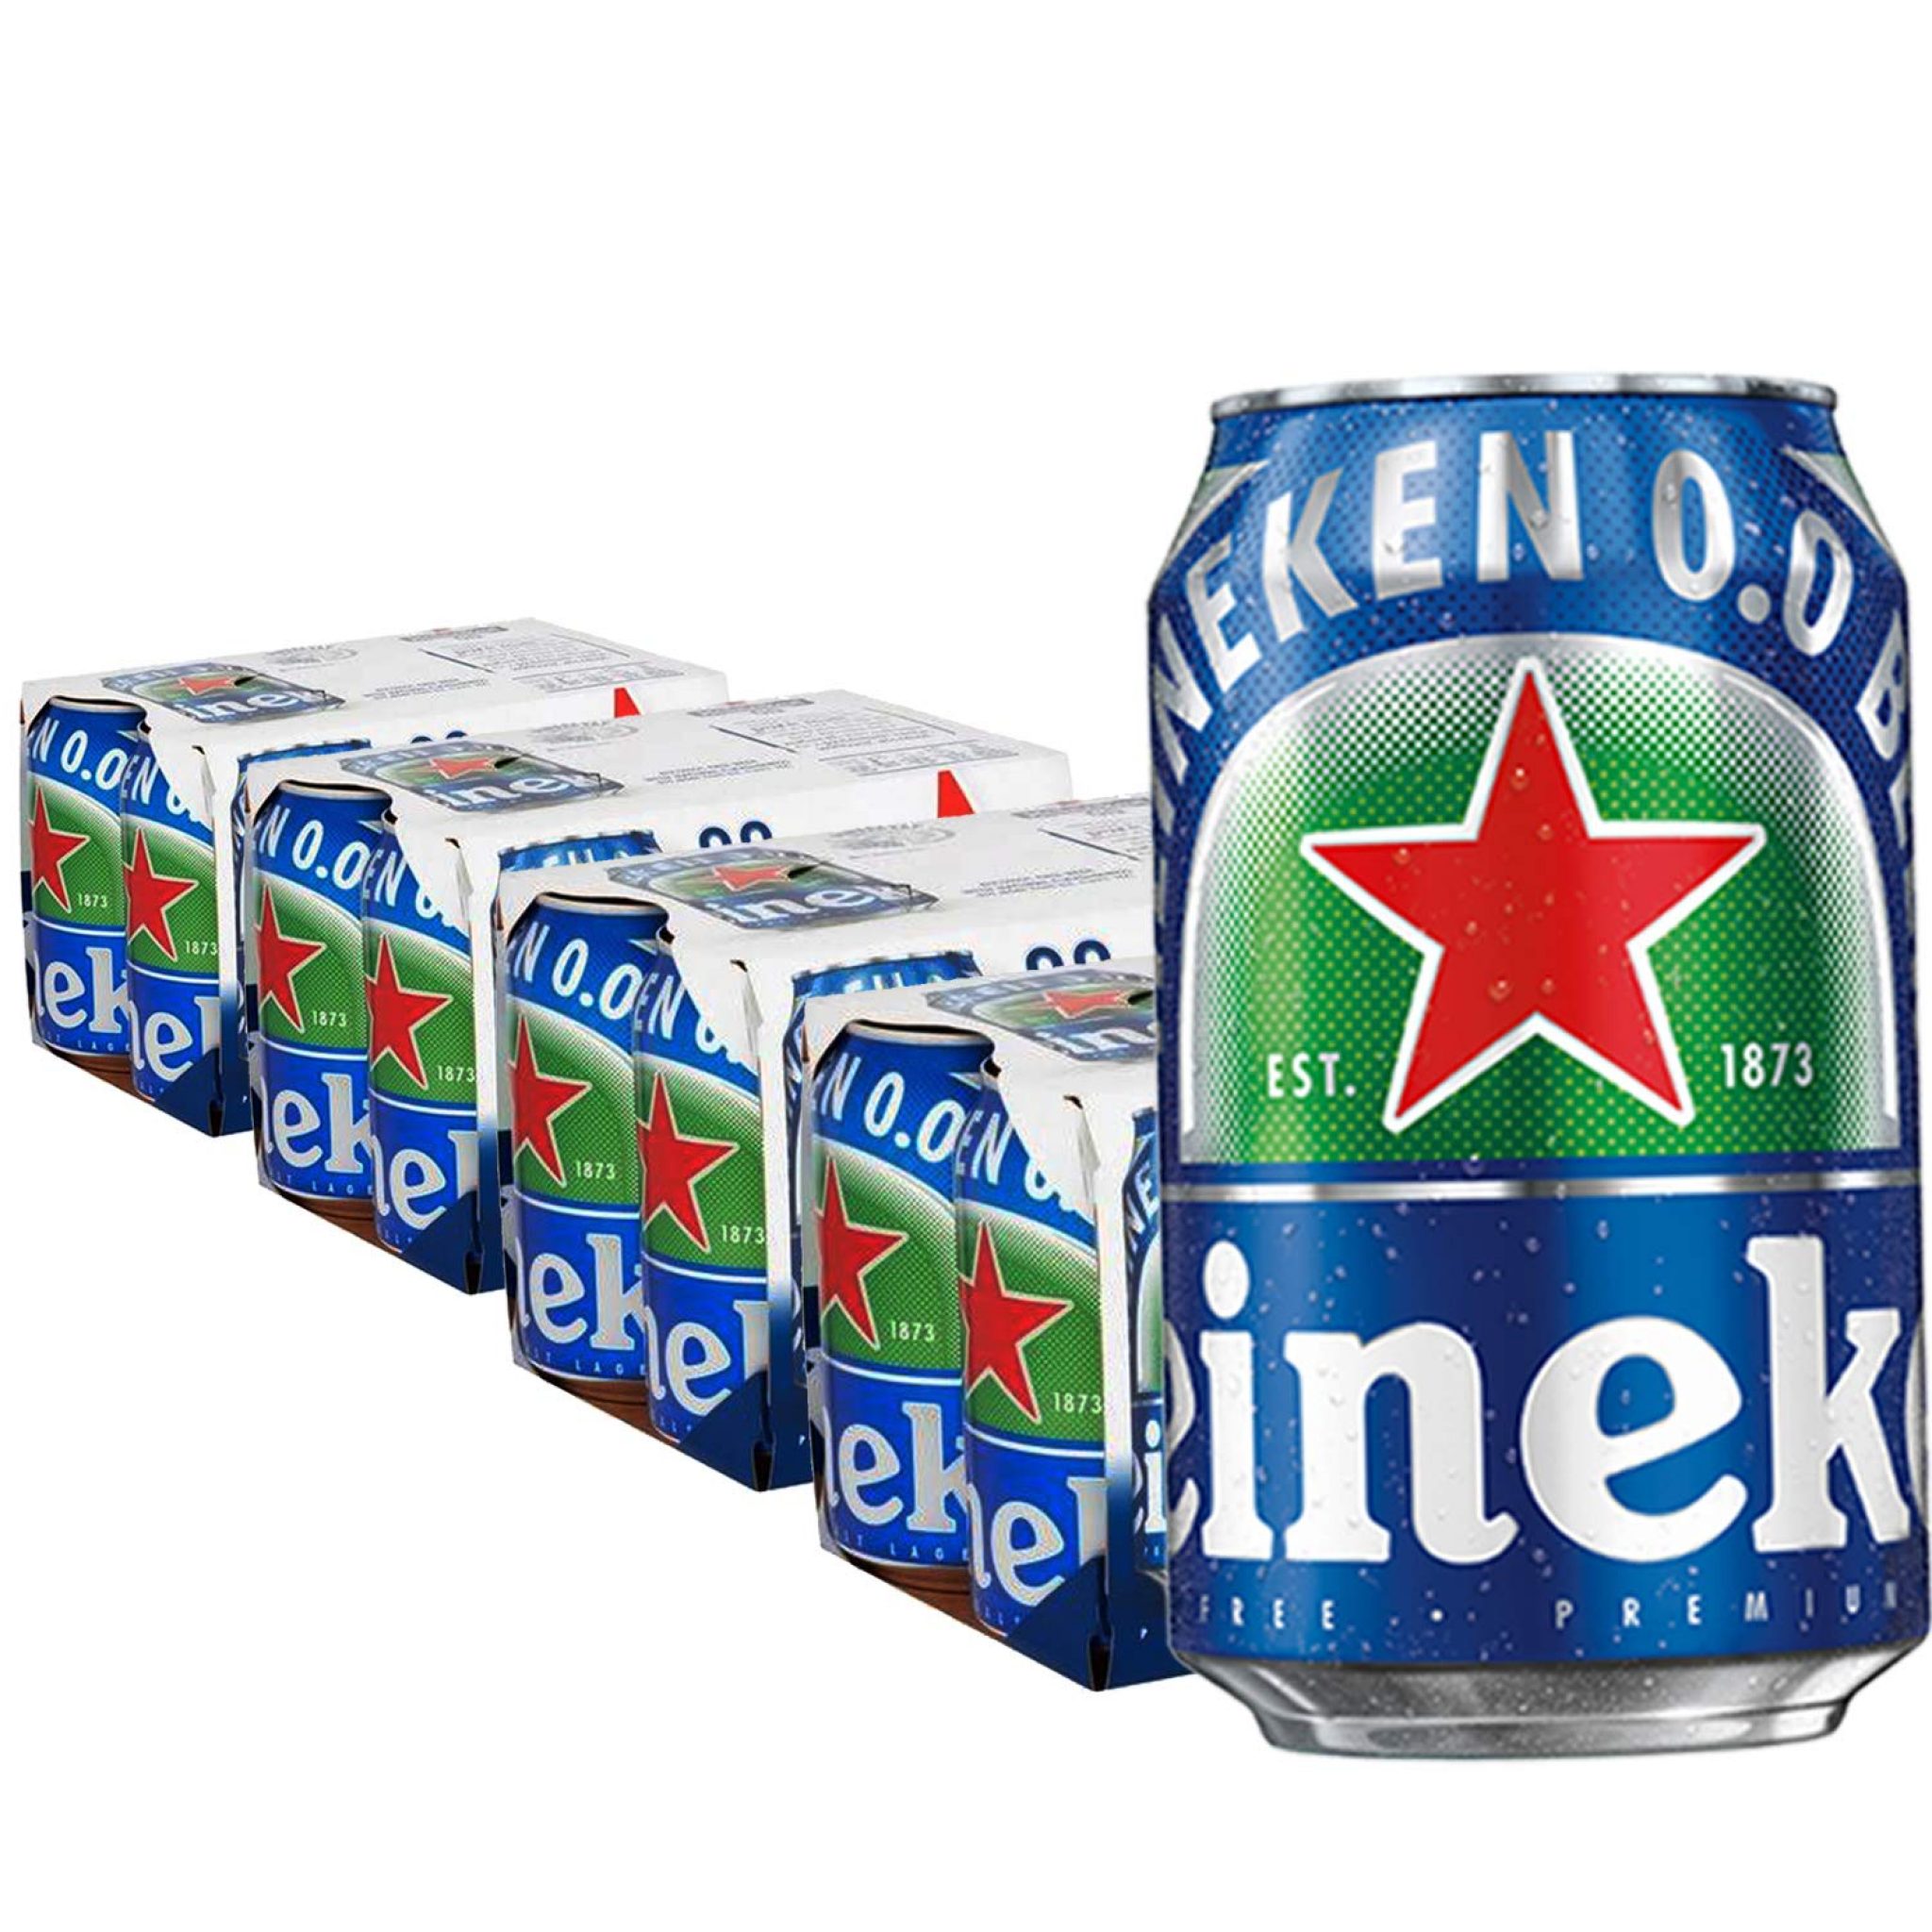 Heineken 0.0 % Non Alcoholic Lager Beer - Zero Dot Zero Can, 24 Pack